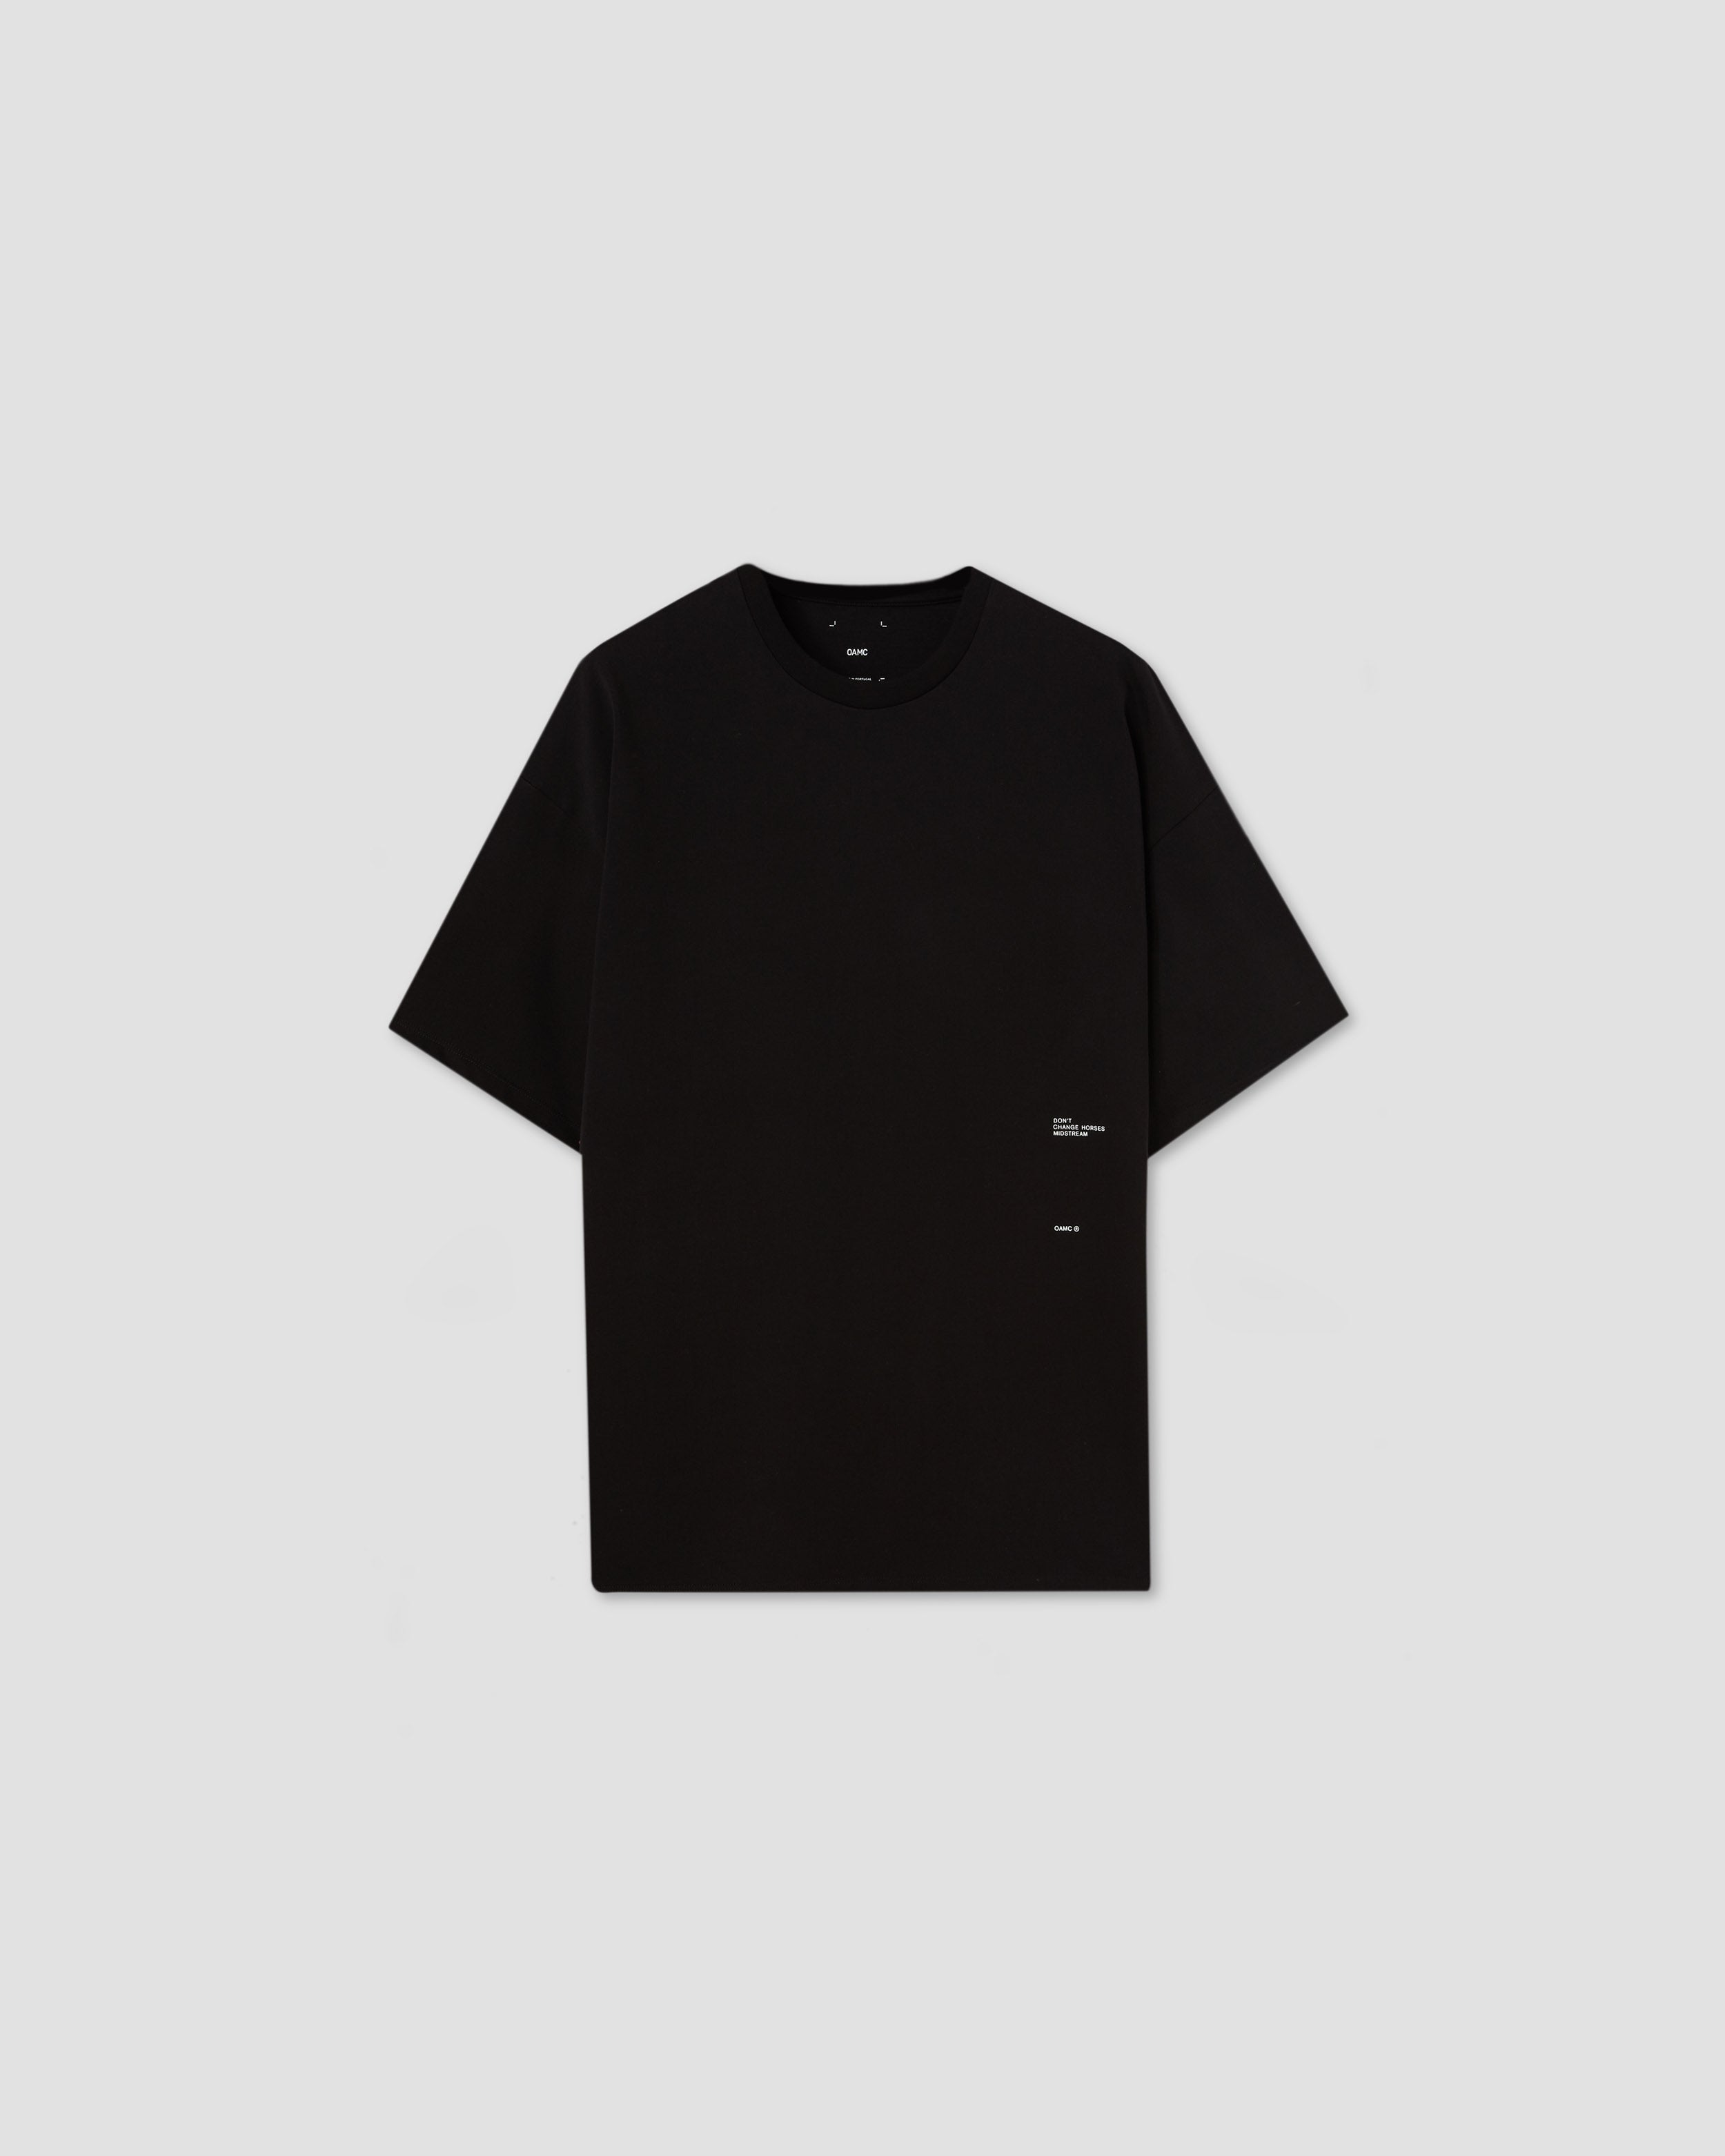 Daphne T-Shirt in Black | OAMC